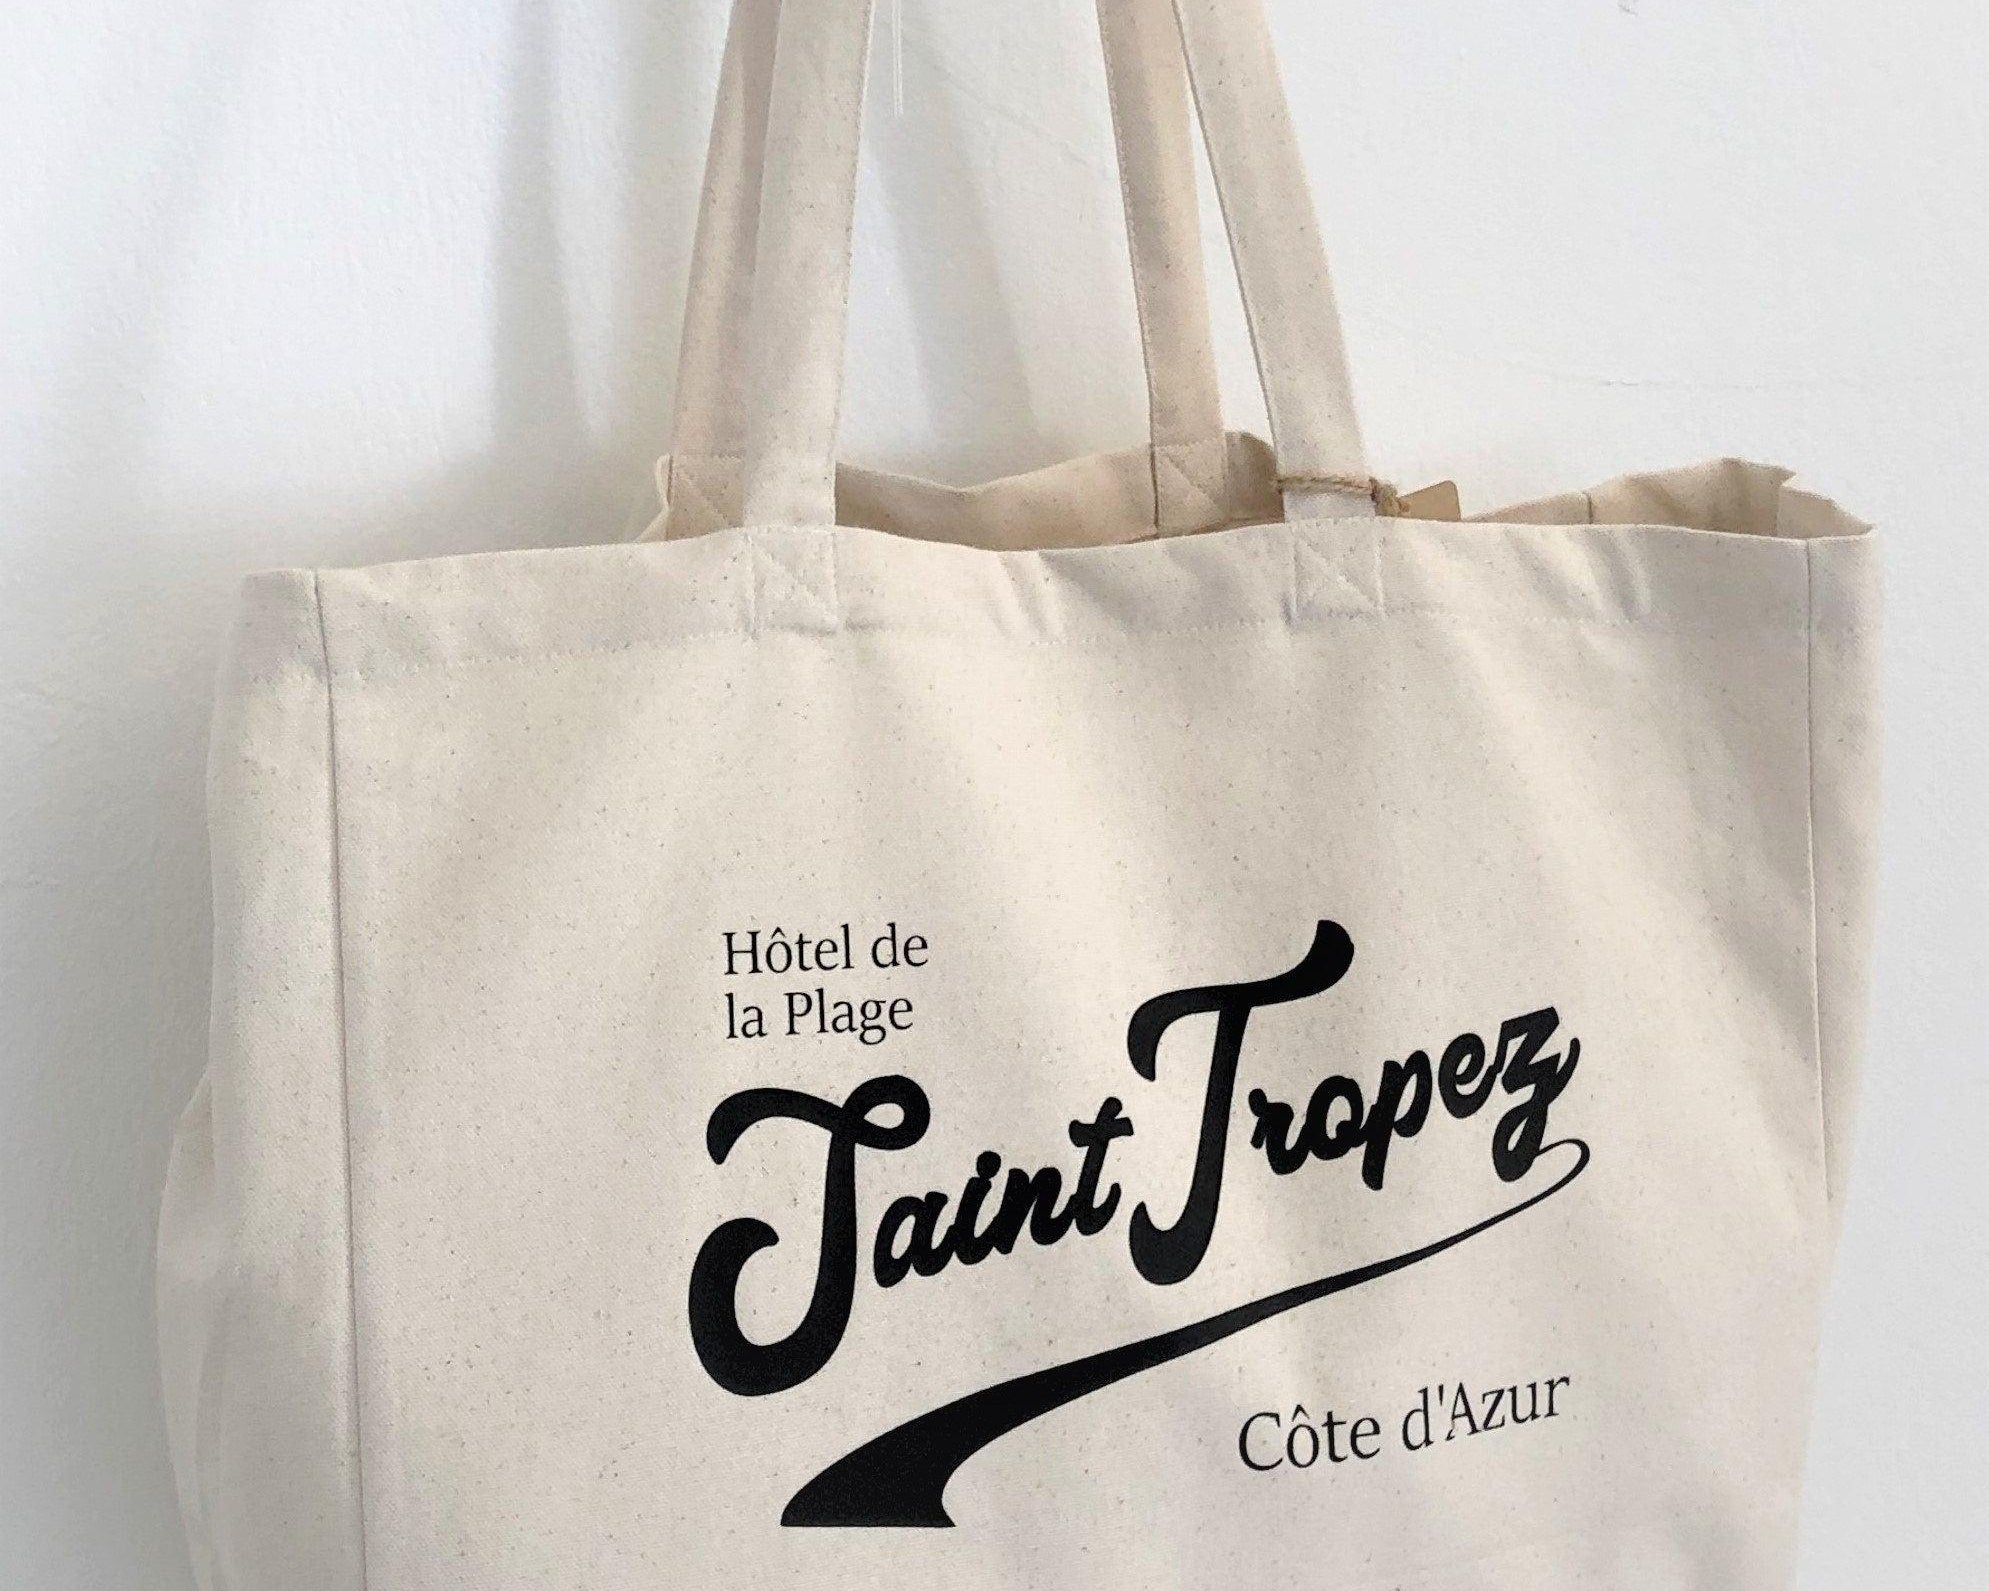 Tasche aus Canvas | Saint Tropez | Shopper | Strandtasche - Roo's Gift Shop